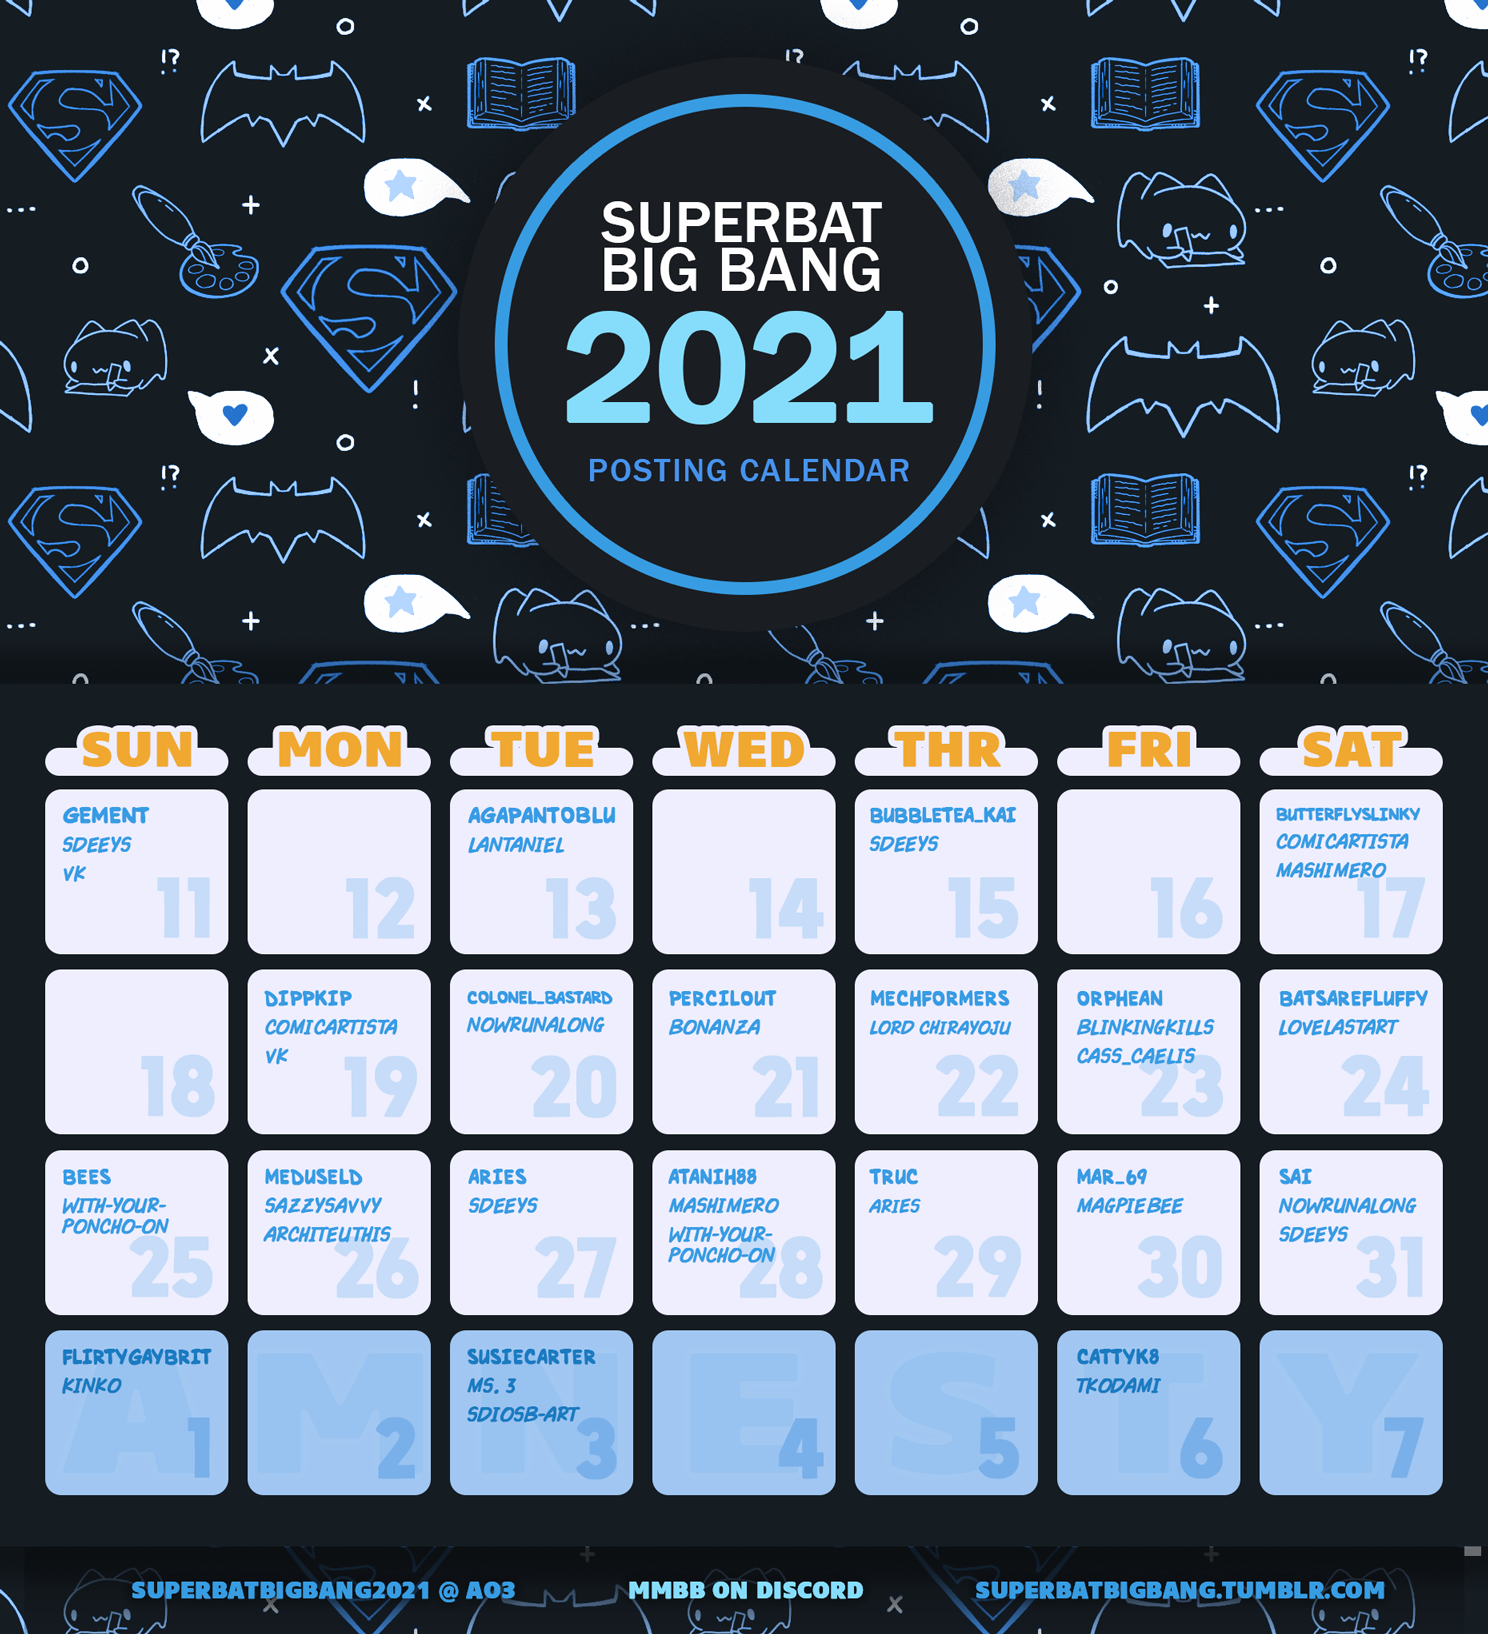 Superbat Big Bang 2021 Posting Calendar